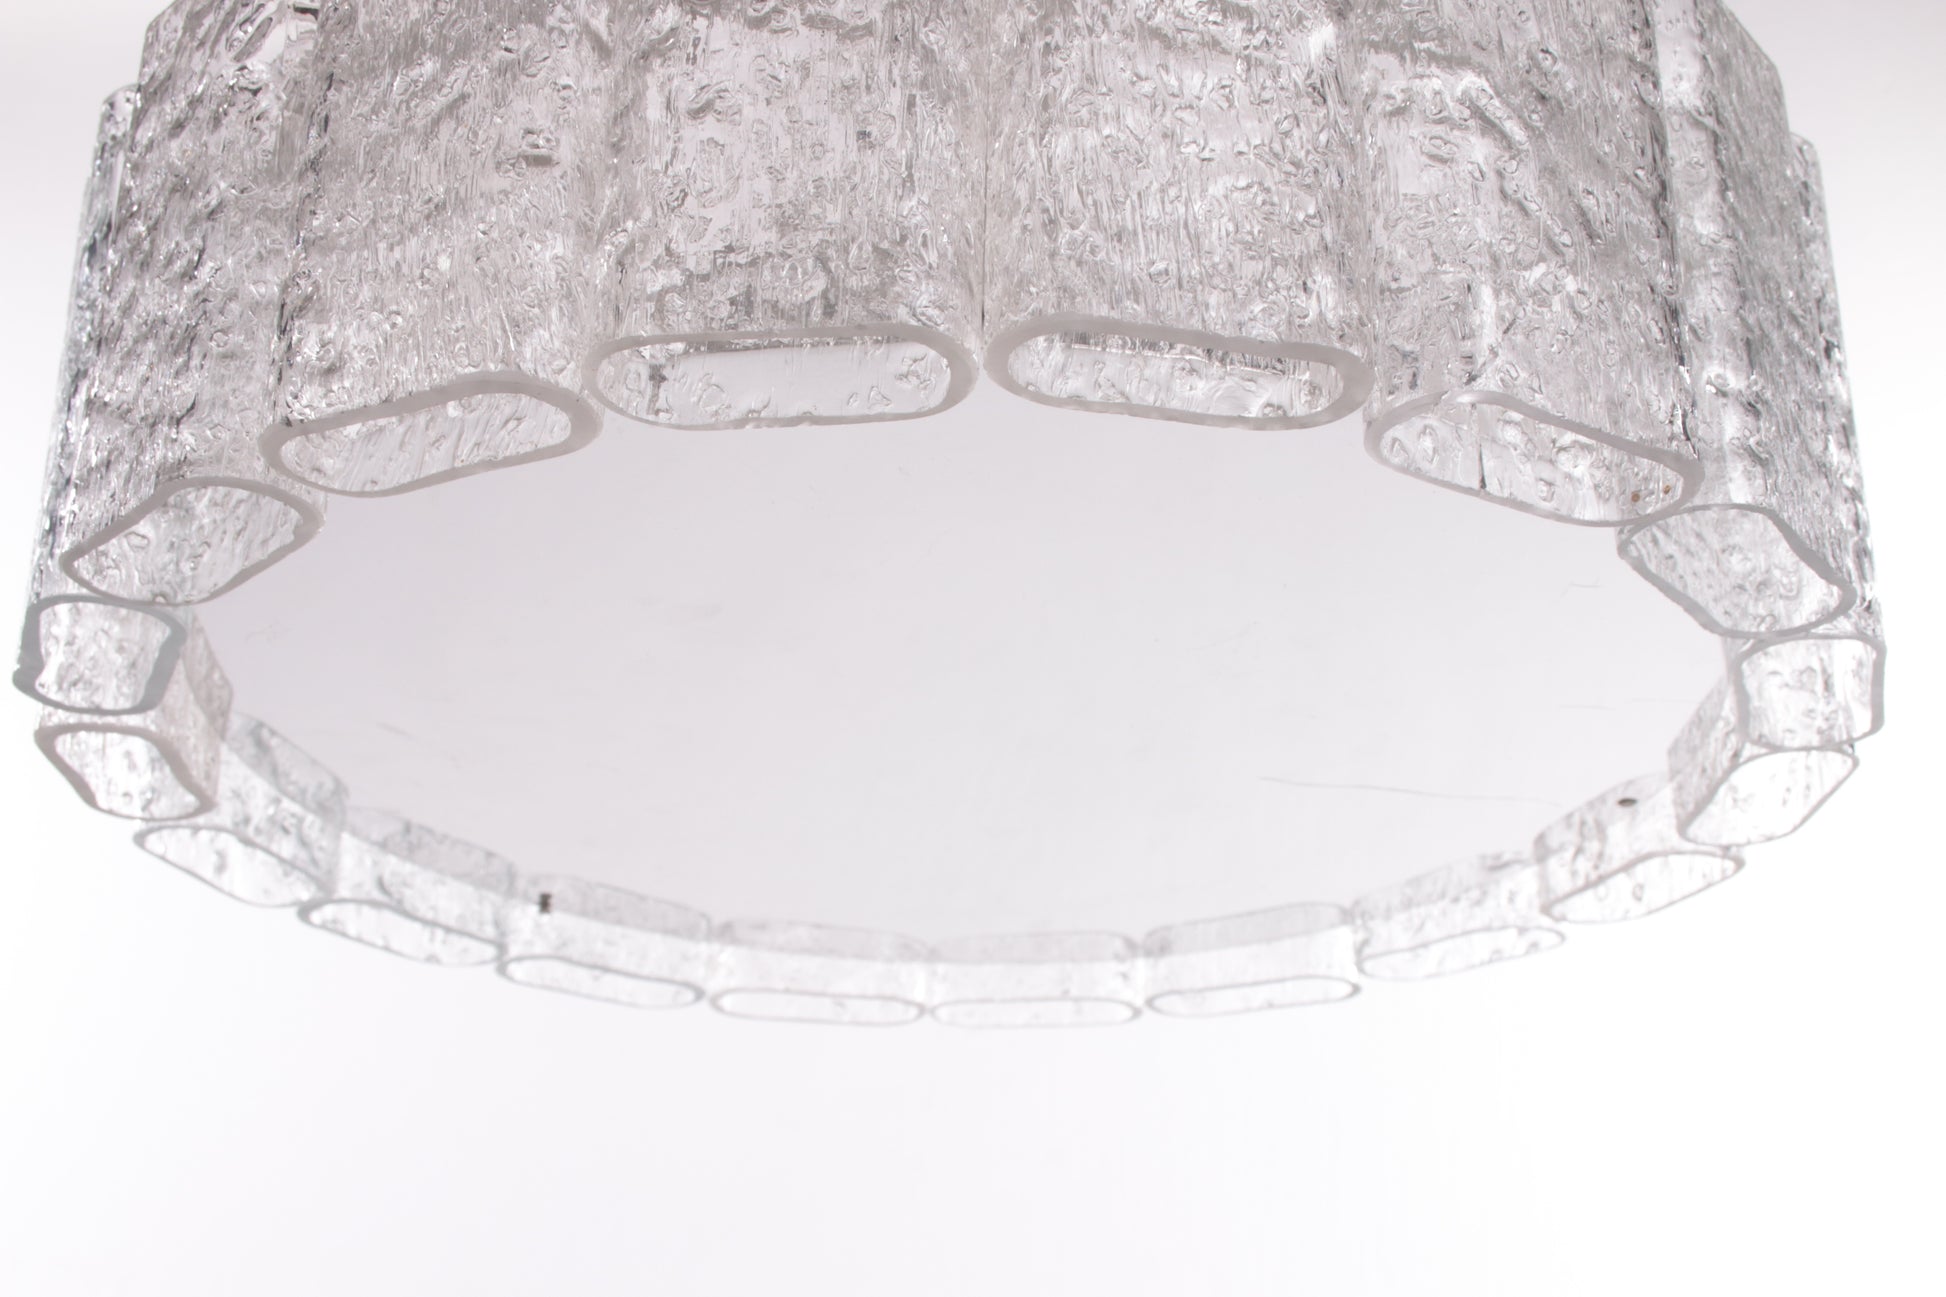 Mid-Century Ice Glass Pendant from Doria Leuchten